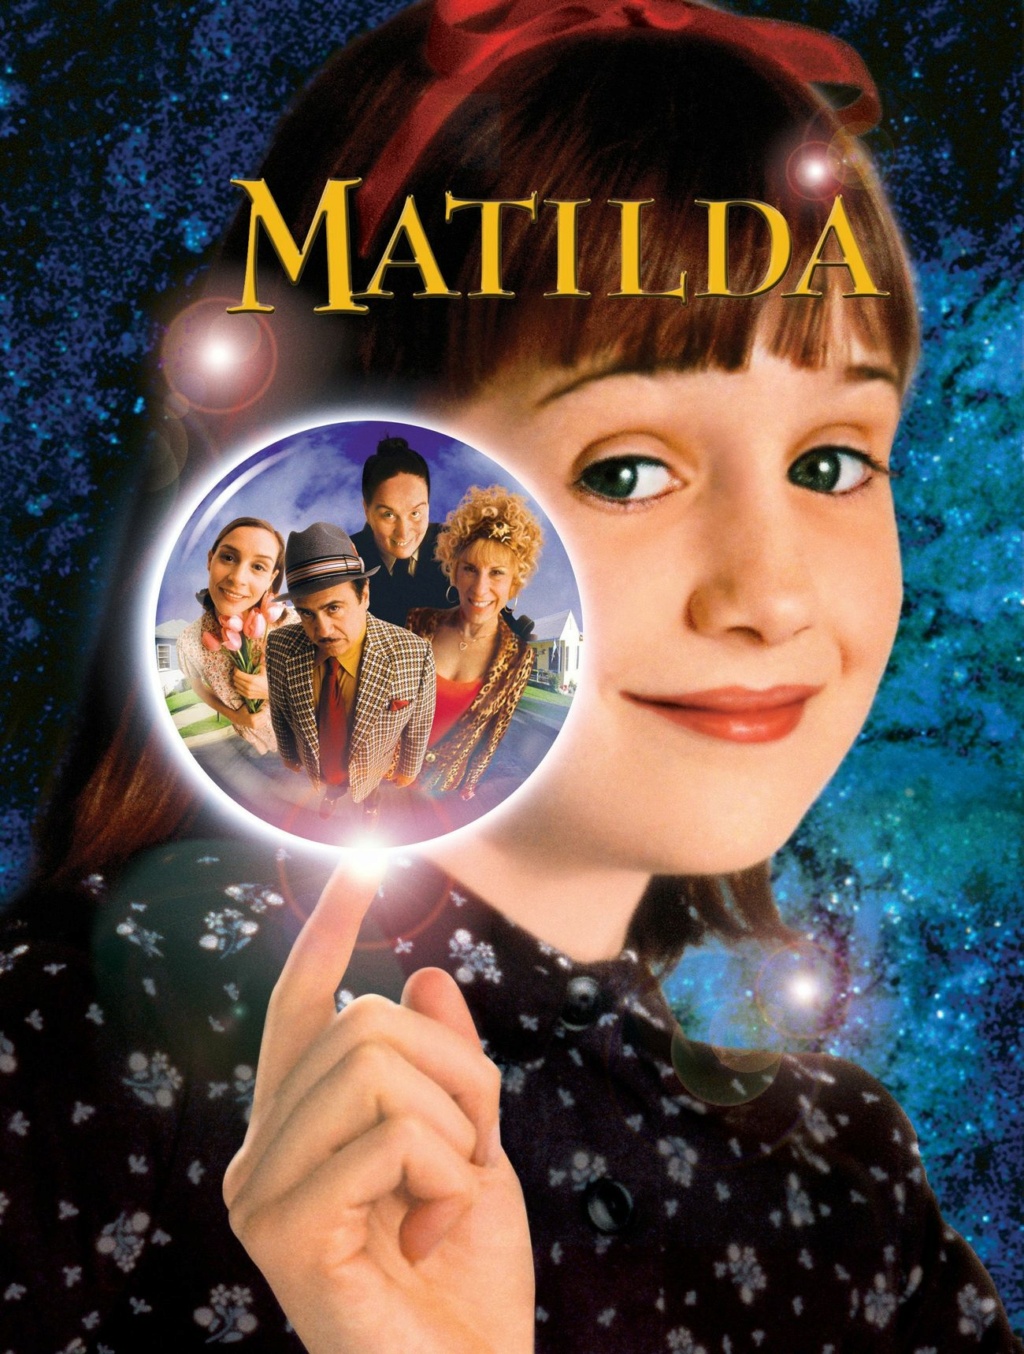 فيلم Matilda مدبلج كامل HD